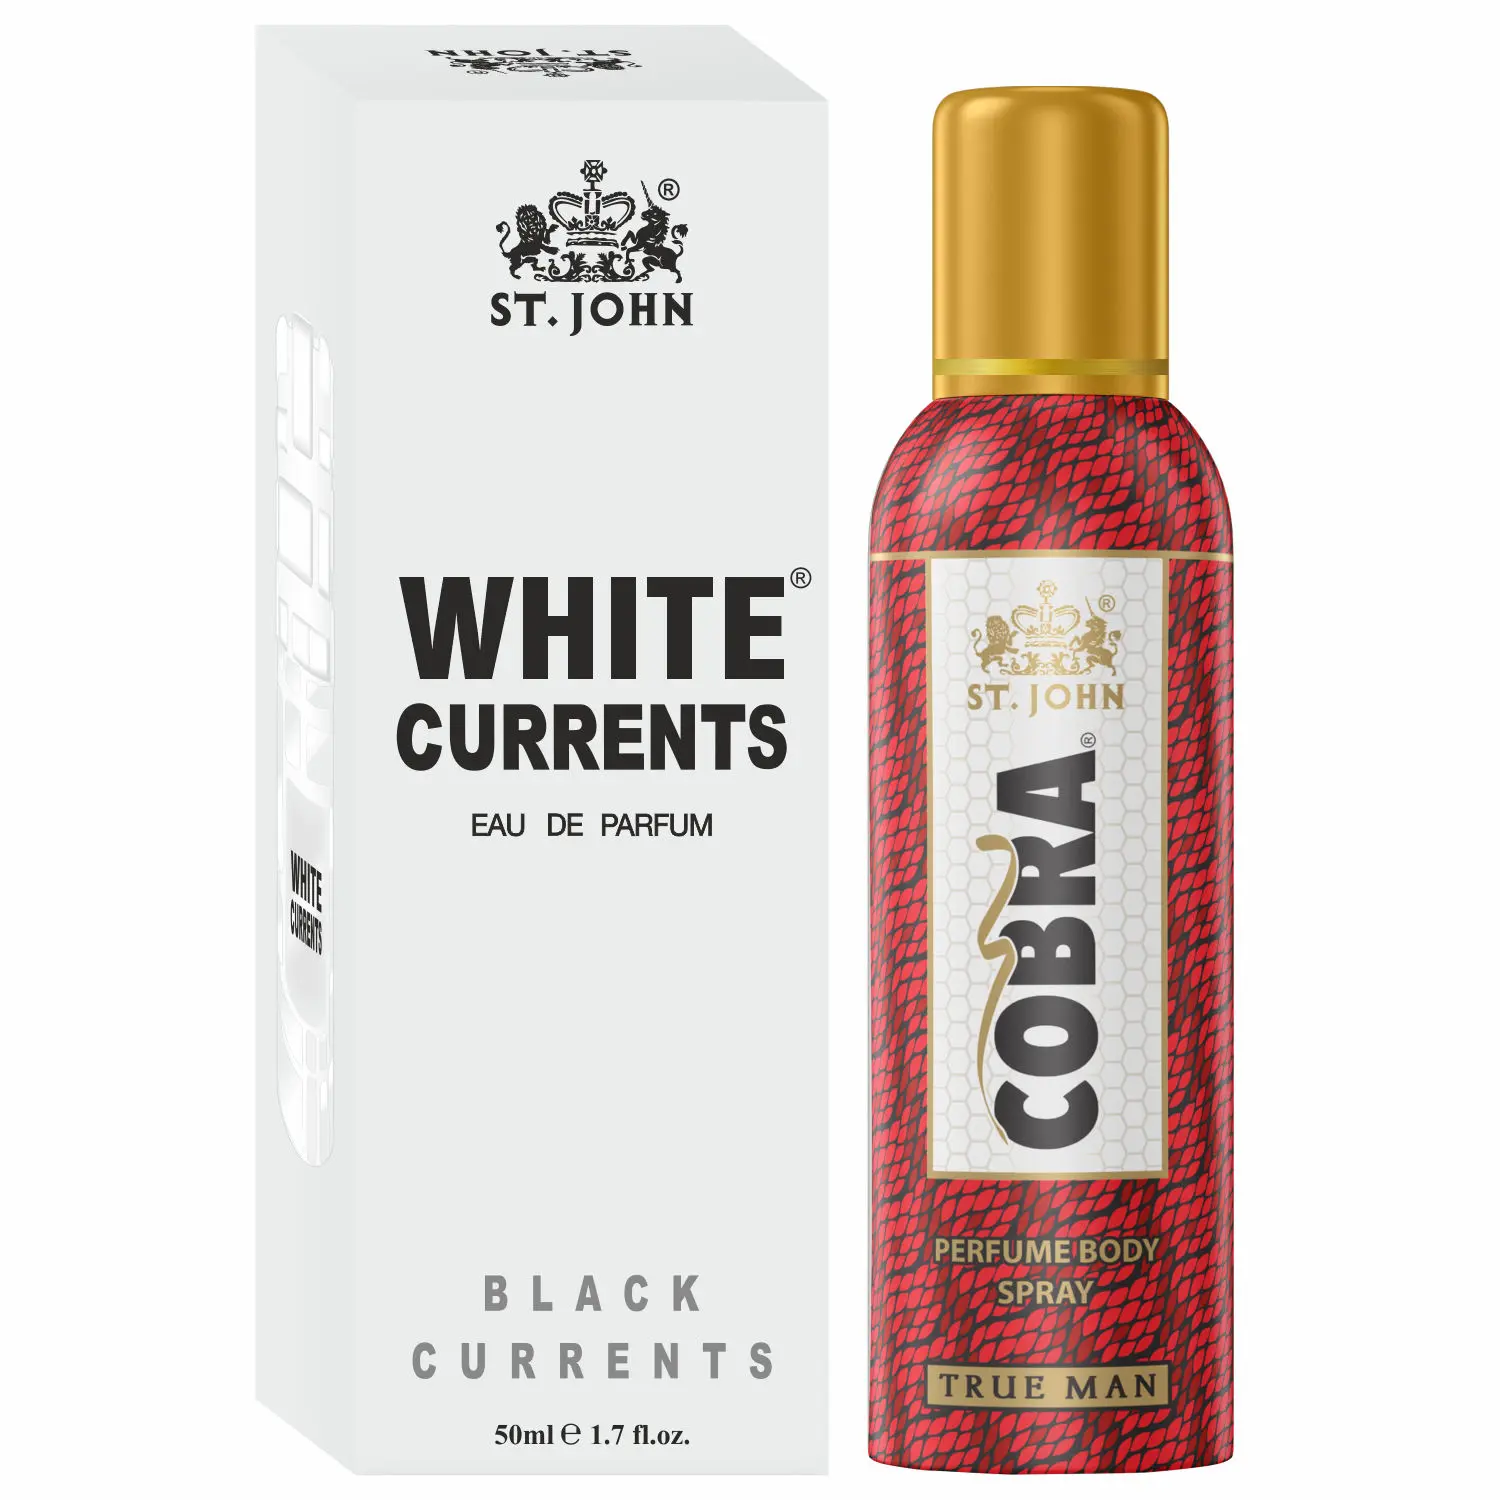 ST-JOHN Cobra Deodrant No Gas True Man 100ml & White Current 50ml Perfume Combo Pack Perfume Body Spray - For Men & Women (150 ml, Pack of 2)